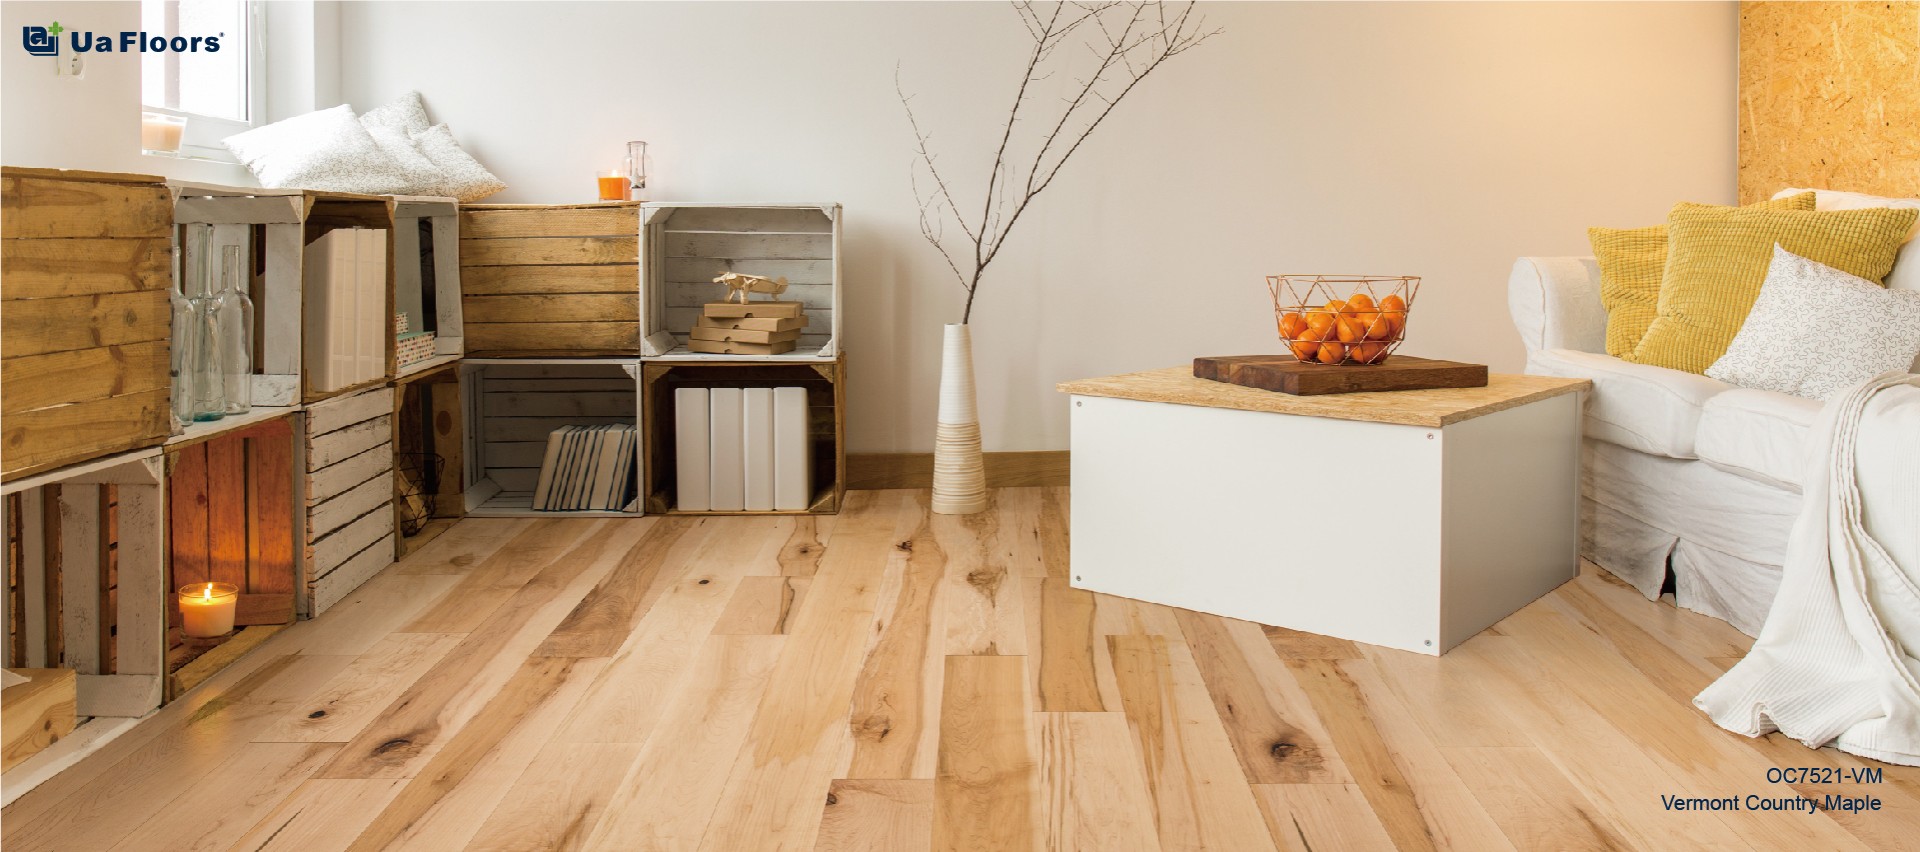 Stylish And Durable Maple Engineered, Amazing Hardwood Floors